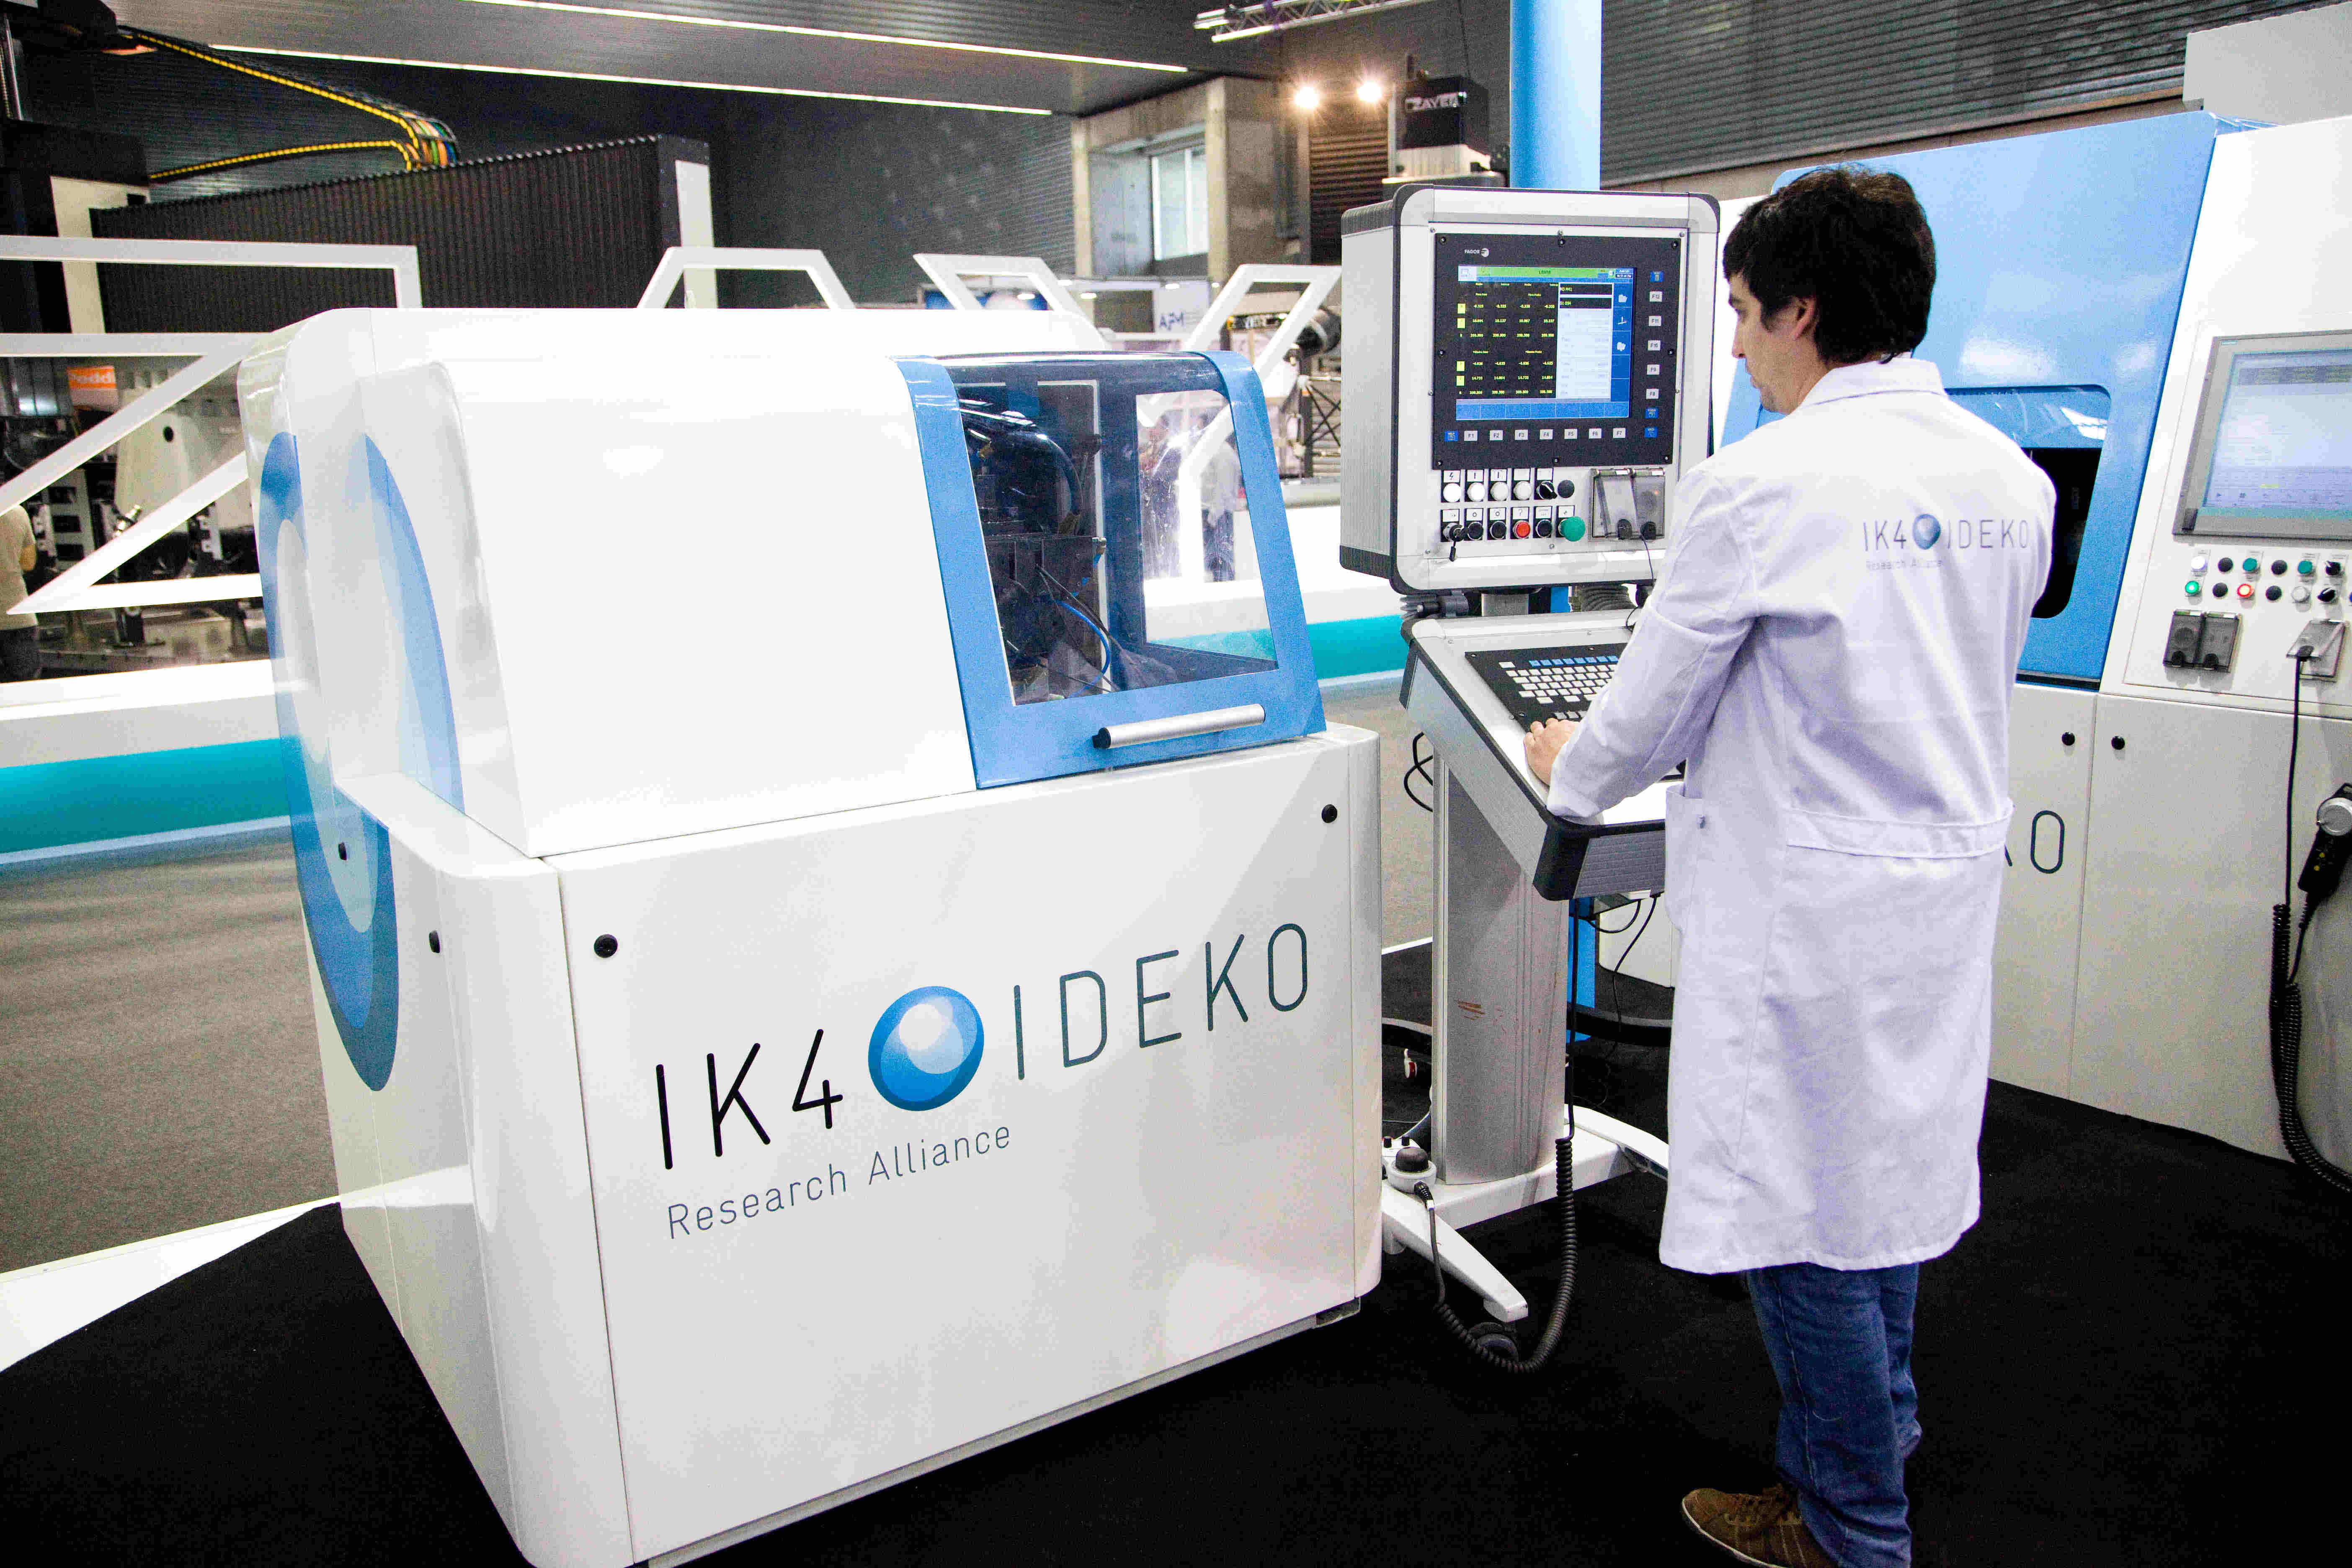 IK4-IDEKO makina-erremintaren efizientzia handitzeko eta ingurumenean inpaktua gutxitzeko lanean